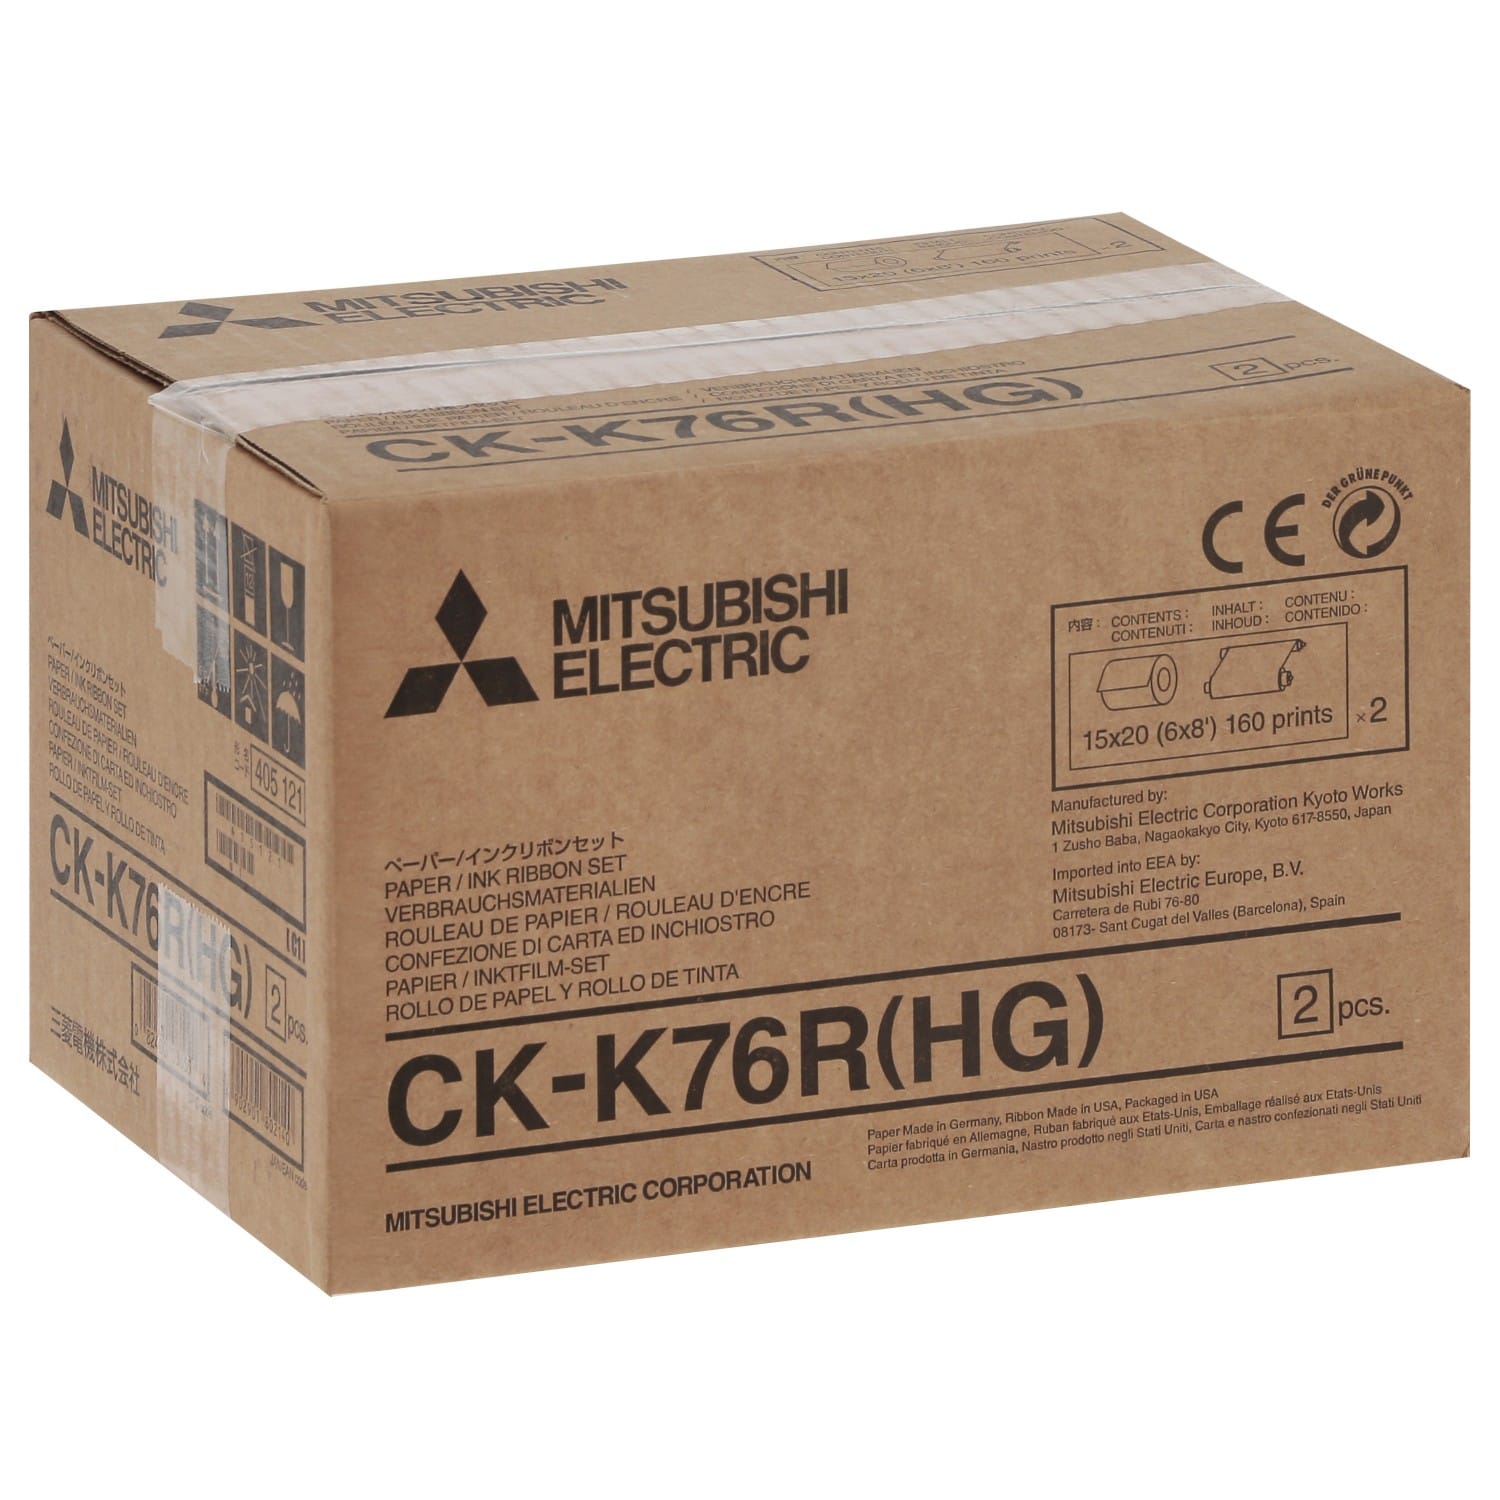 Consommable thermique MITSUBISHI CKK76RHG Haute Qualité - Pour CP-K60DW-S - 640 tirages 10x15cm ou 320 tirages 15x20cm